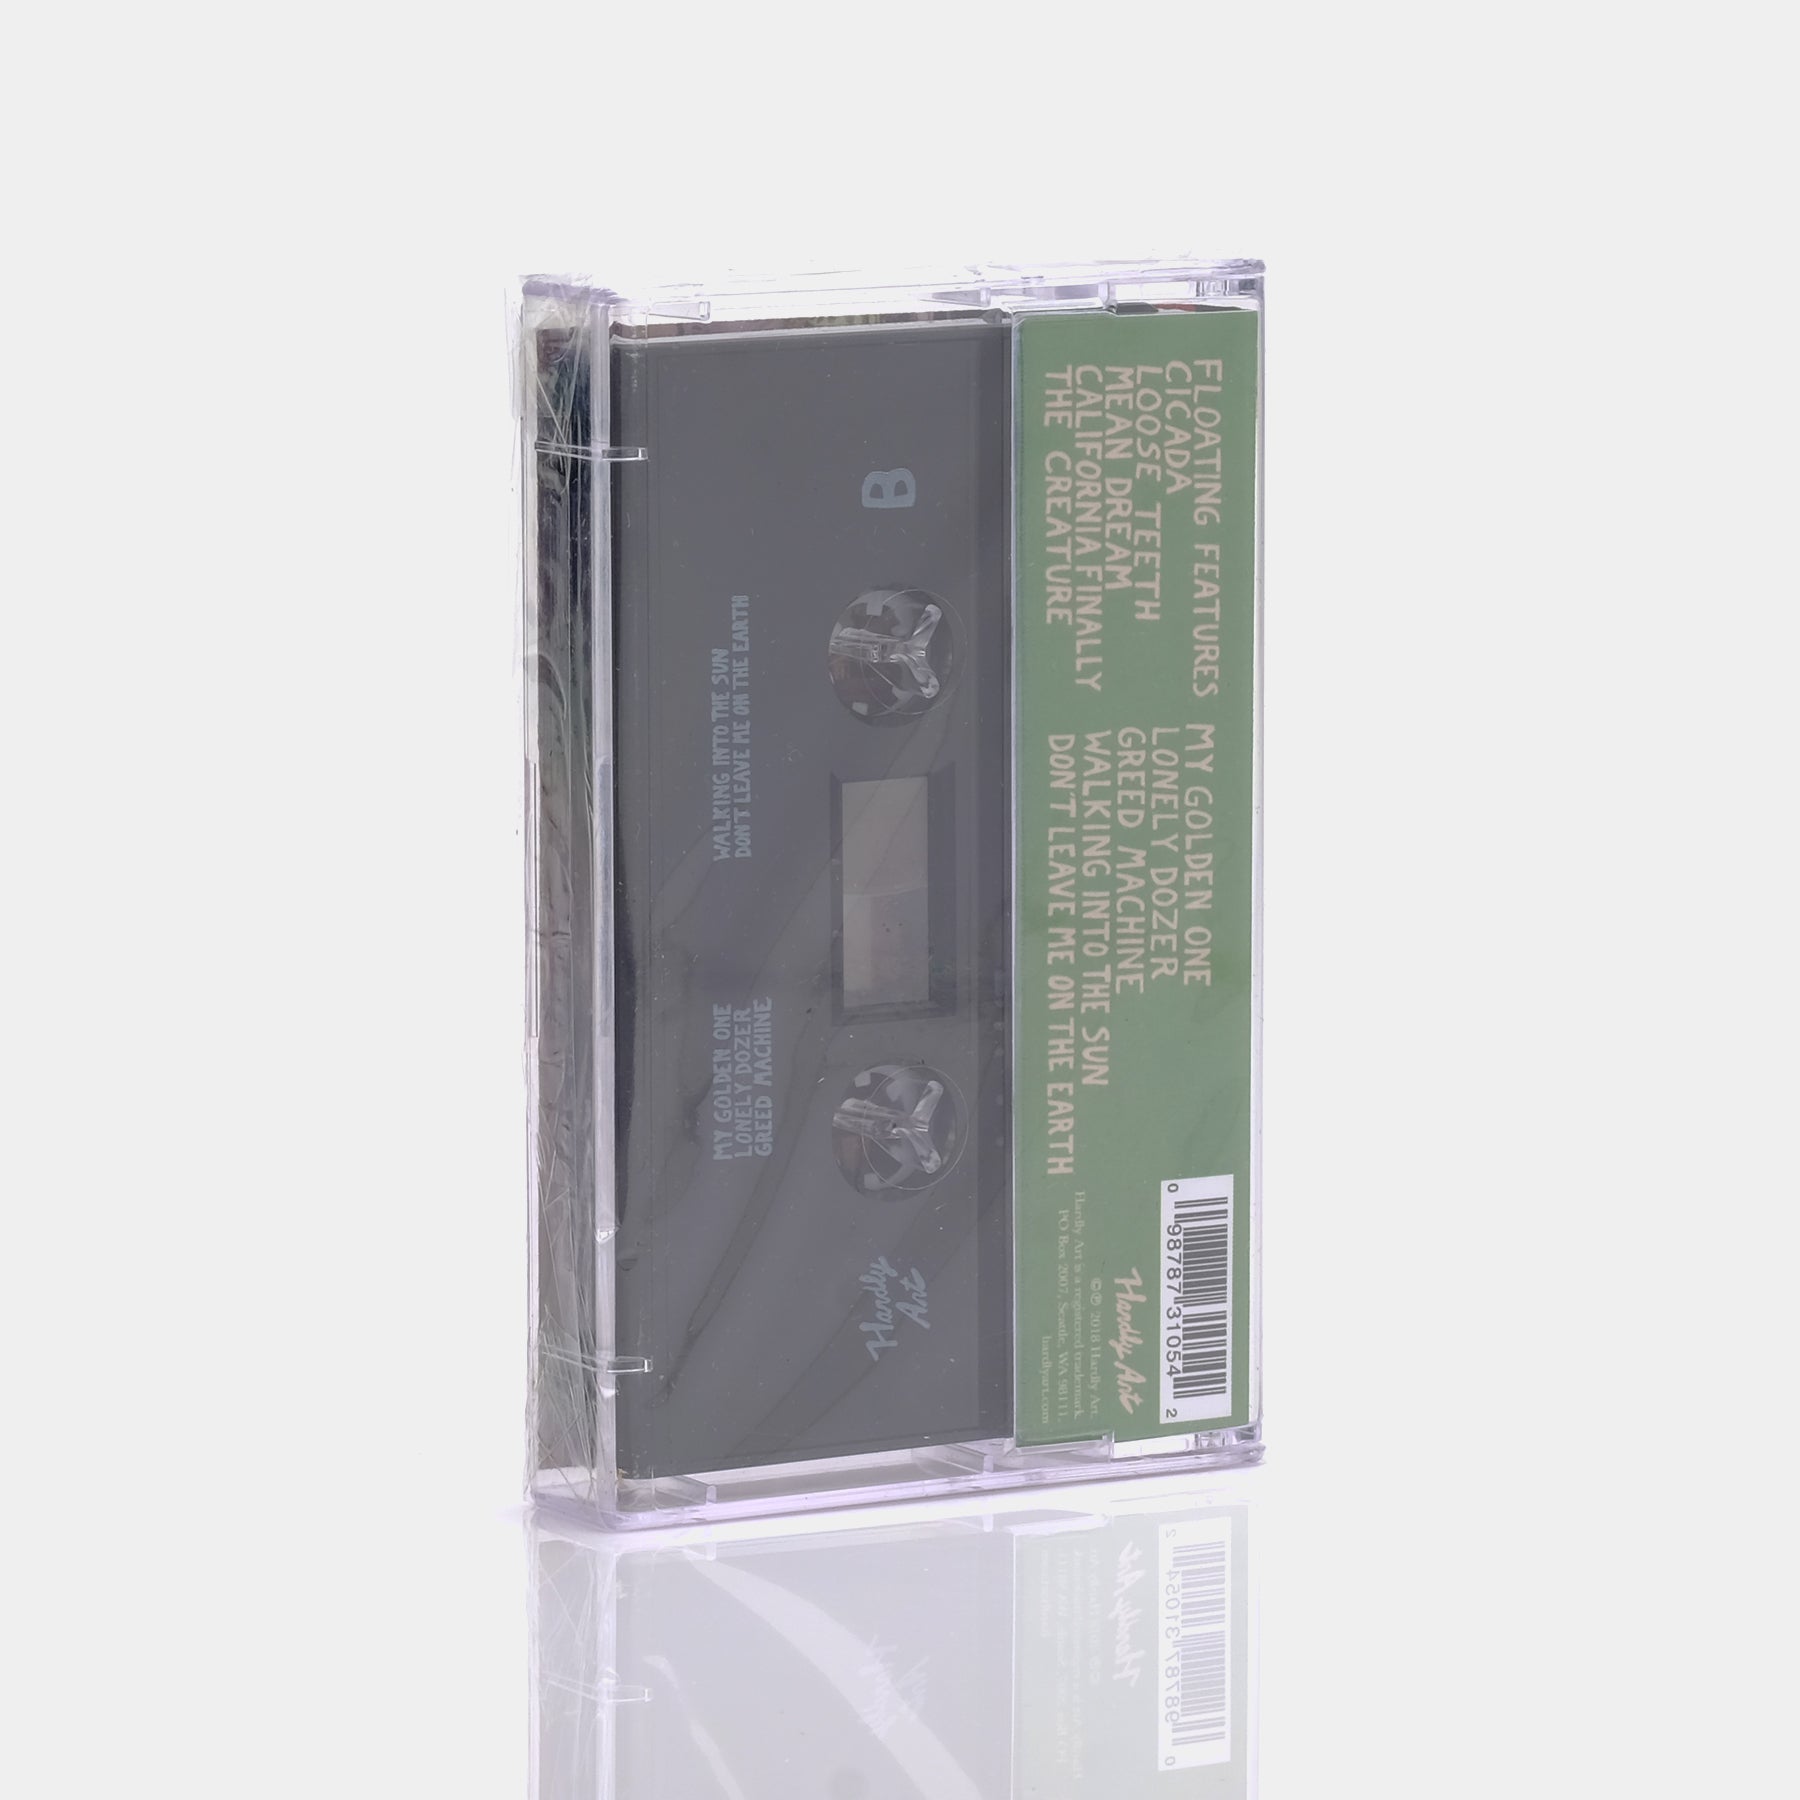 La Luz - Floating Features Cassette Tape